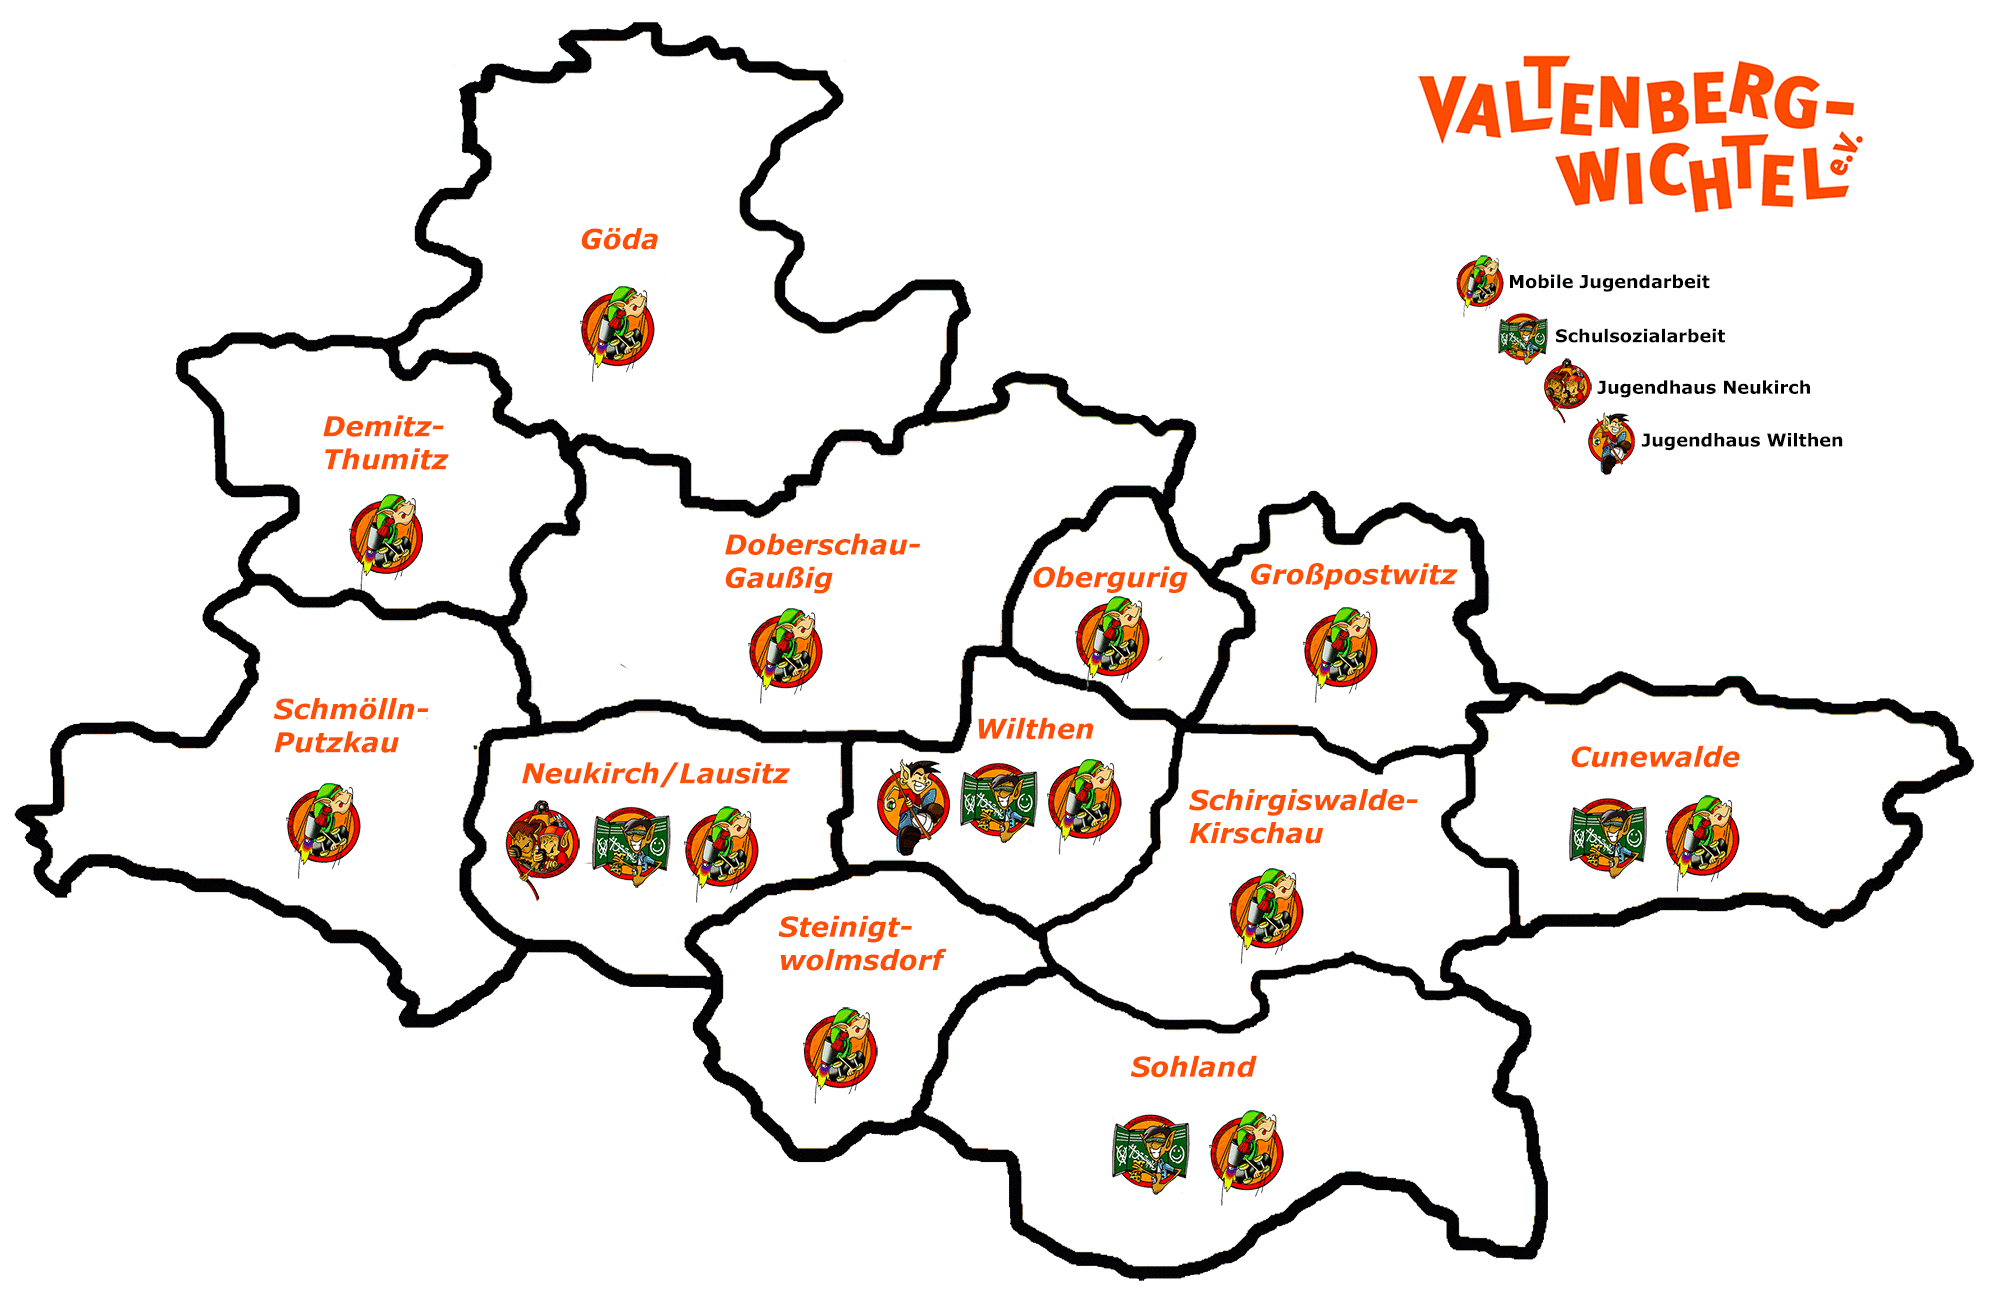 Přehled oddělení Valtenbergwichtel